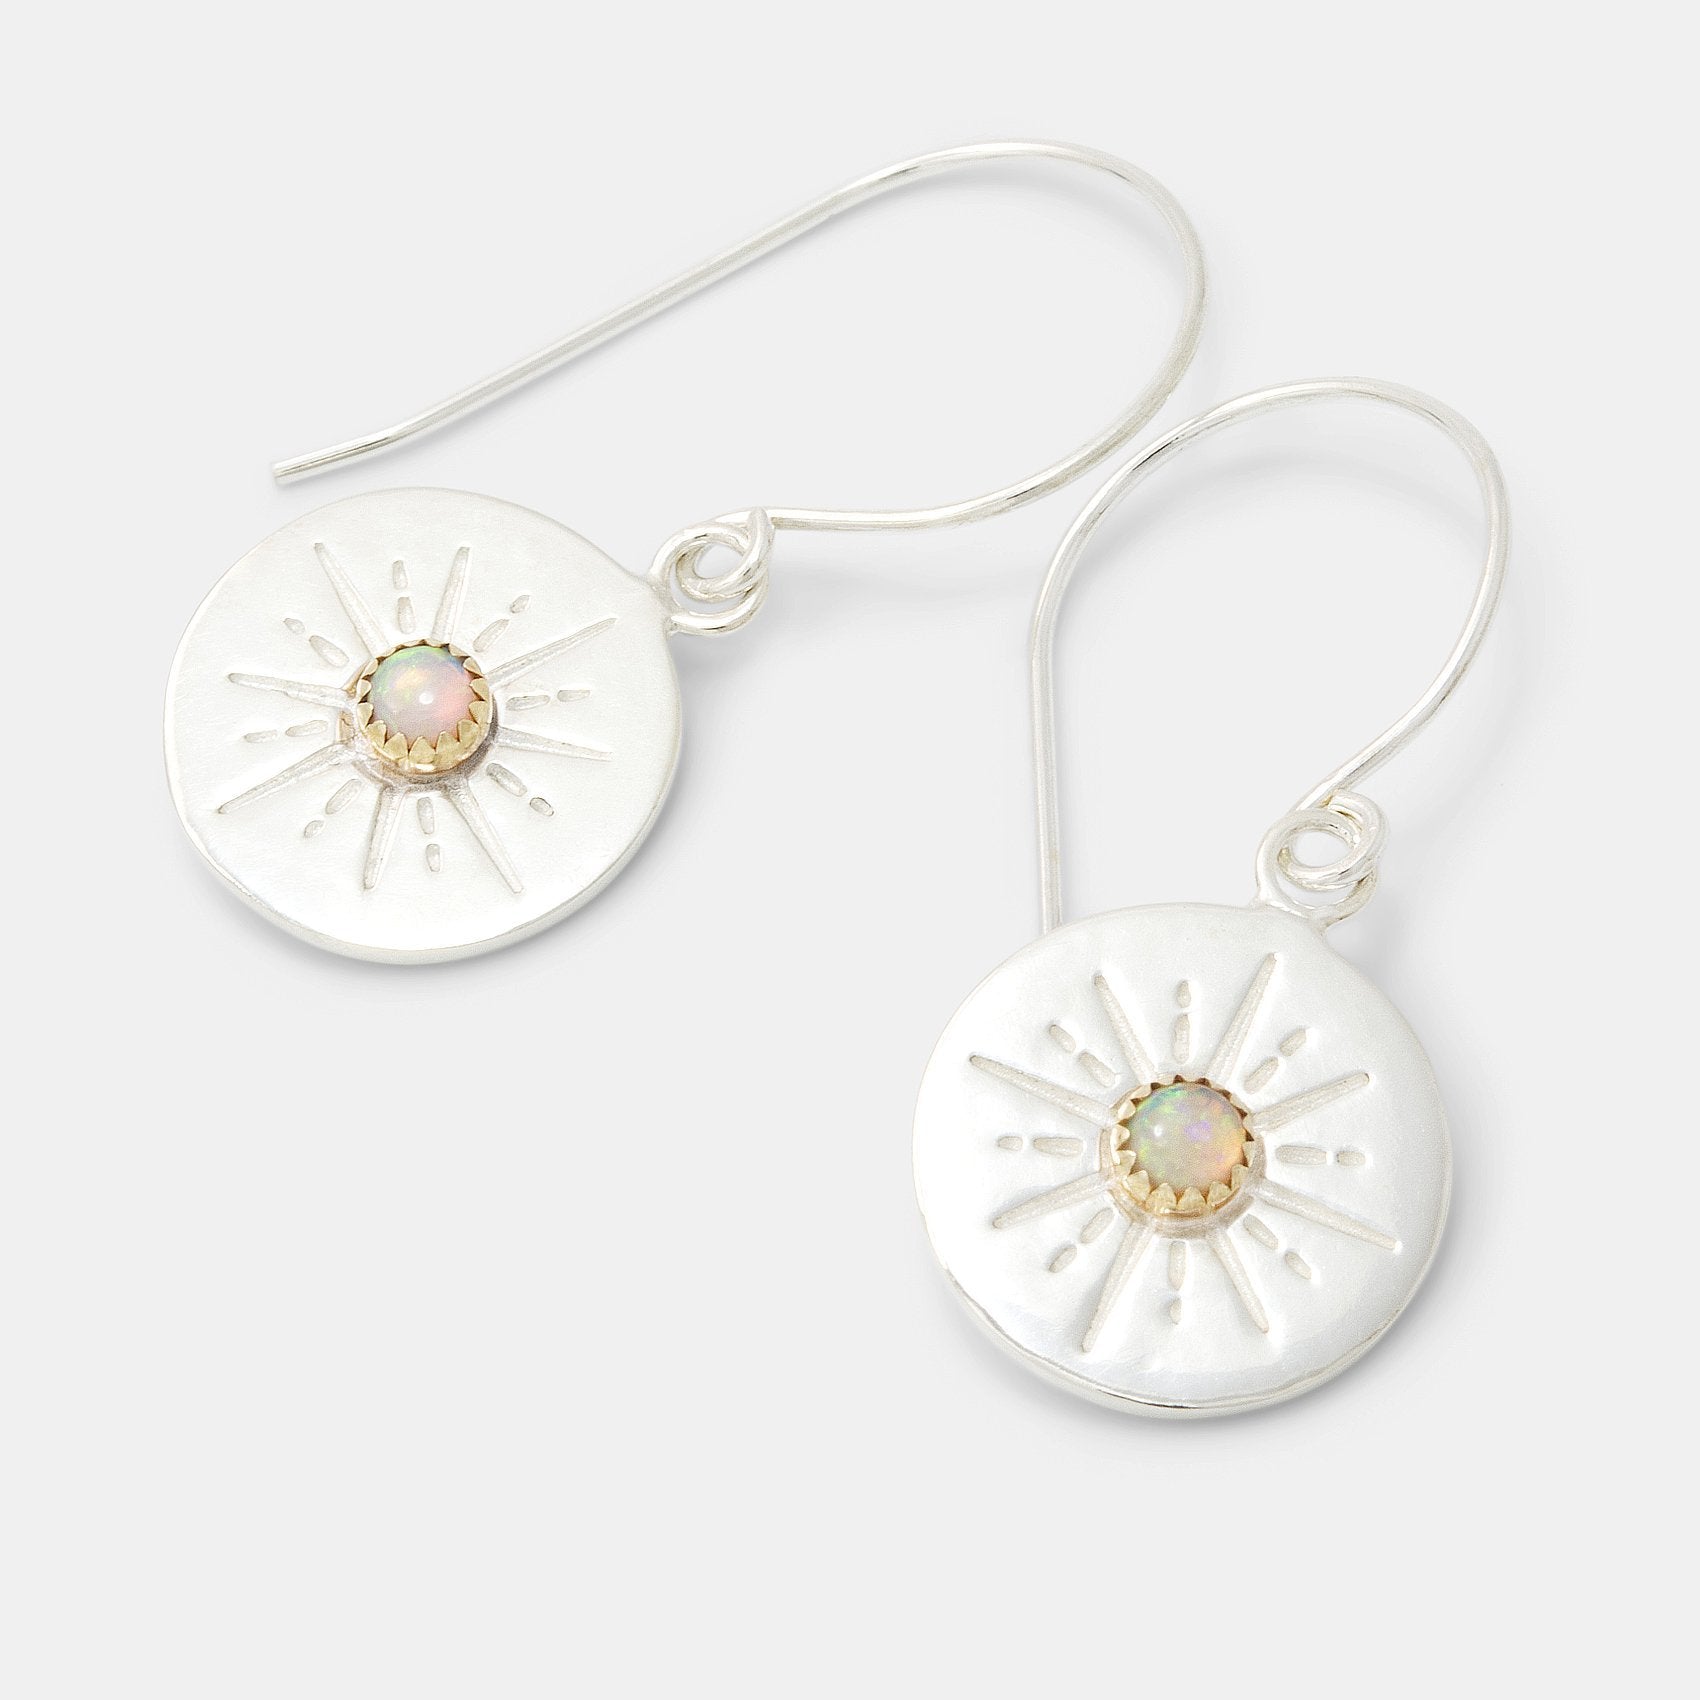 Starburst & opal amulet drop earrings - Simone Walsh Jewellery Australia